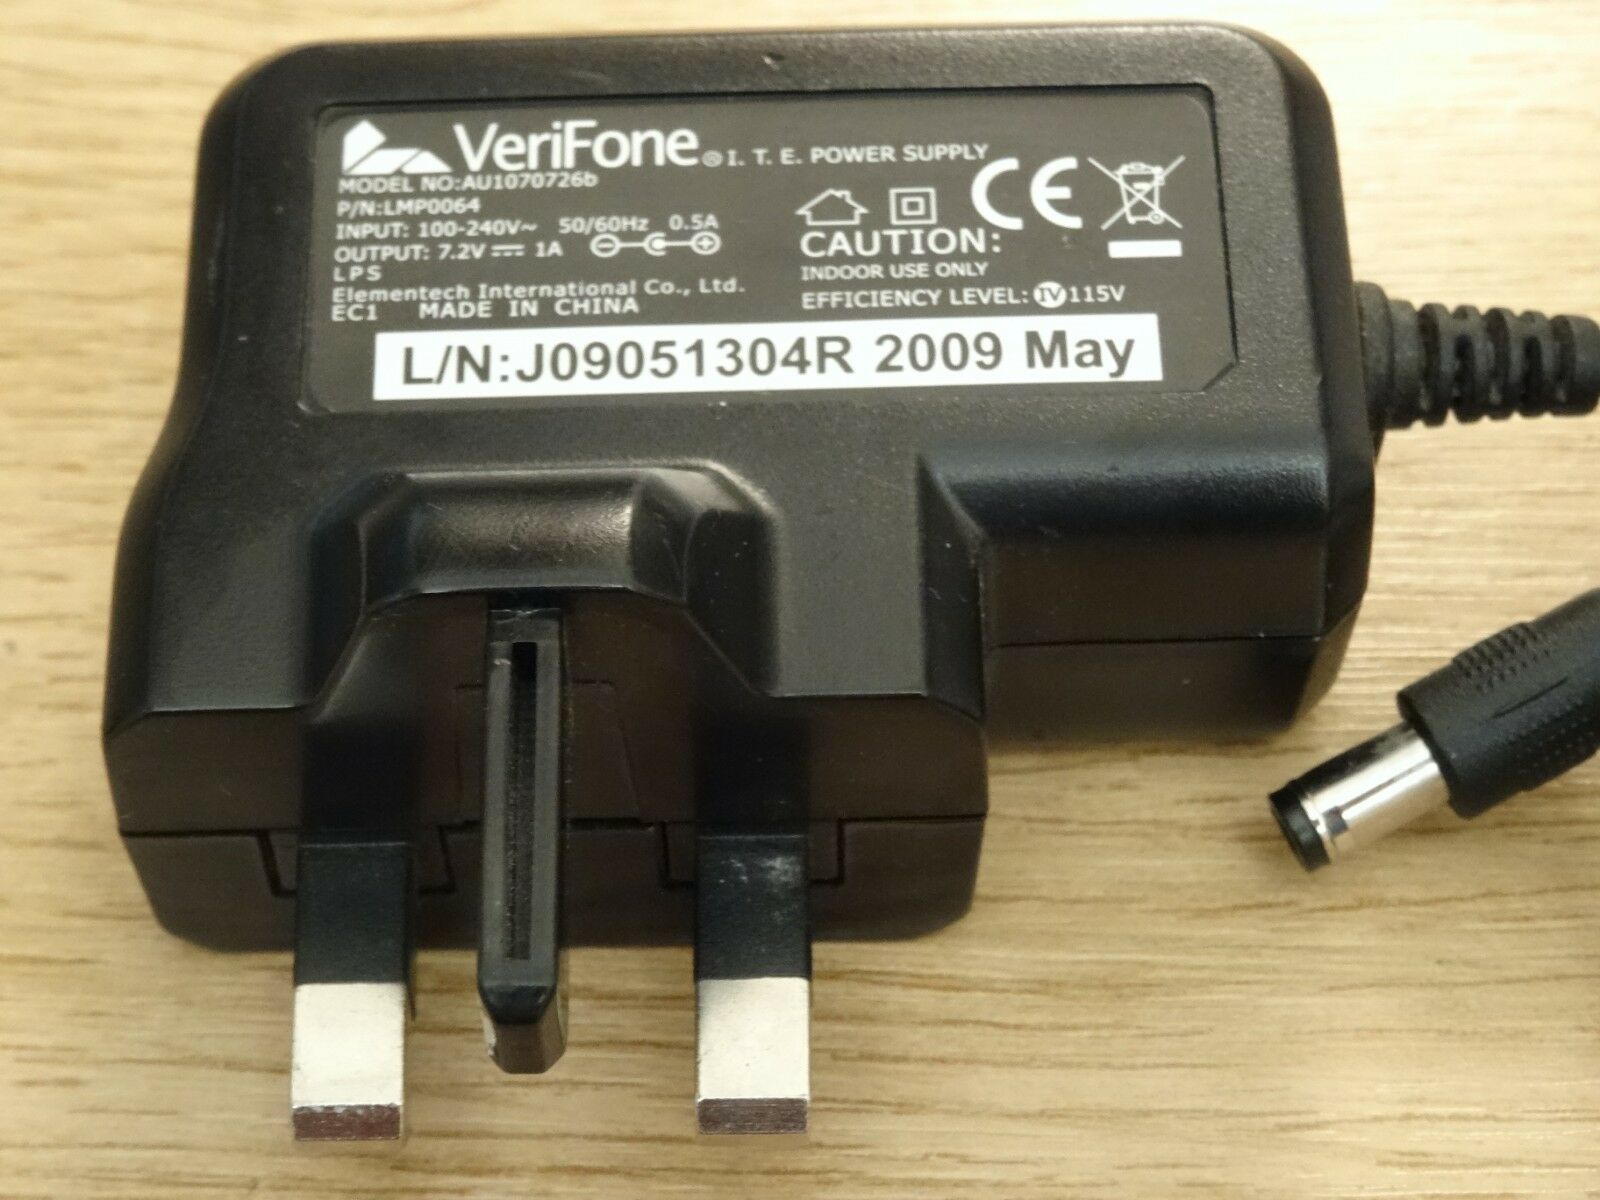 New VeriFone AU1070726b LMP0064 7.2V 1A PSU ADAPTER I.T.E. Power Supply - Click Image to Close